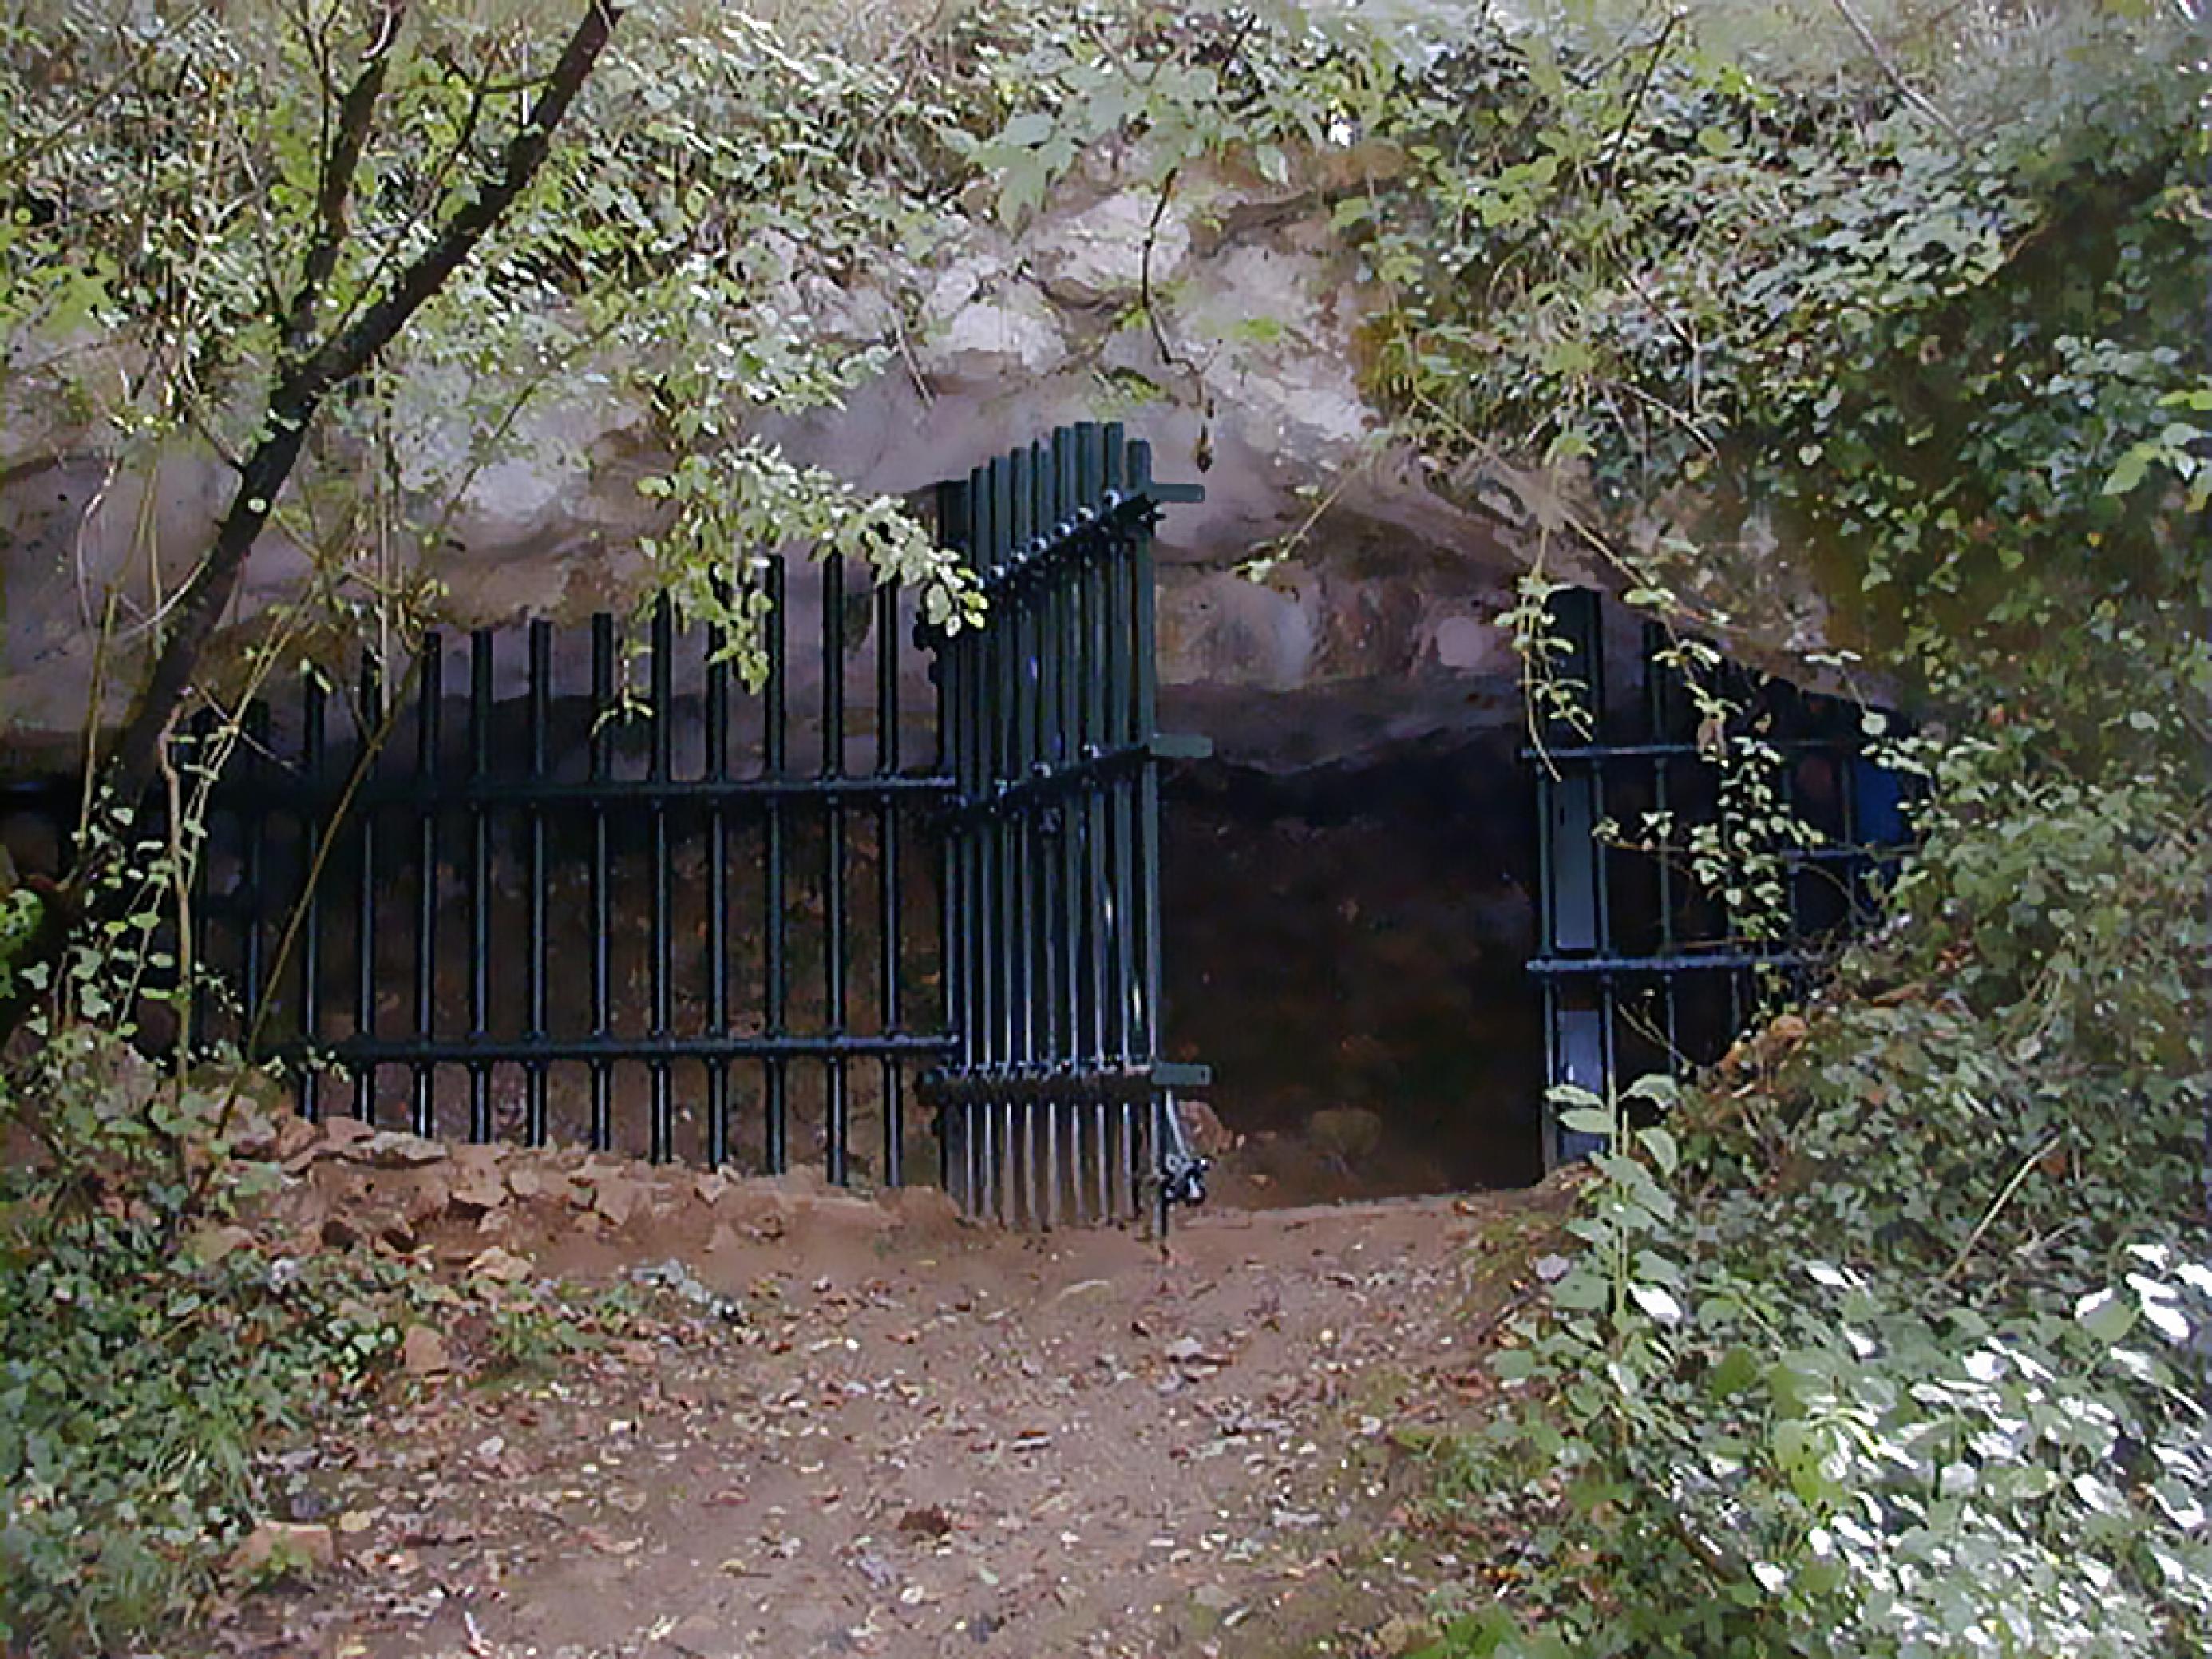 Als dunkles länglich-ovales Loch zeigt sich der Eingang der Grotte de Cussac. Er ist mit einem massiven Metallgitter vor unbefugten Besuchern geschützt. Links und rechts im Vordergrund stehen grünblättrige Sträucher und kleine Bäume, vorne in der Mitte befindet sich ein steiler Aufgang aus Steinen und felsigem Boden. Über dem Oval des Eingangs ist mächtiger grauer Felsen zu sehen, der das Dach der Höhle bildet. Tief im Inneren der riesigen Grotte, die sich vom Eingang aus 1000 Meter in die eine und 600 Meter in die andere Richtung erstreckt, finden sich die 30.000 Jahre alten steinzeitlichen Gräber.